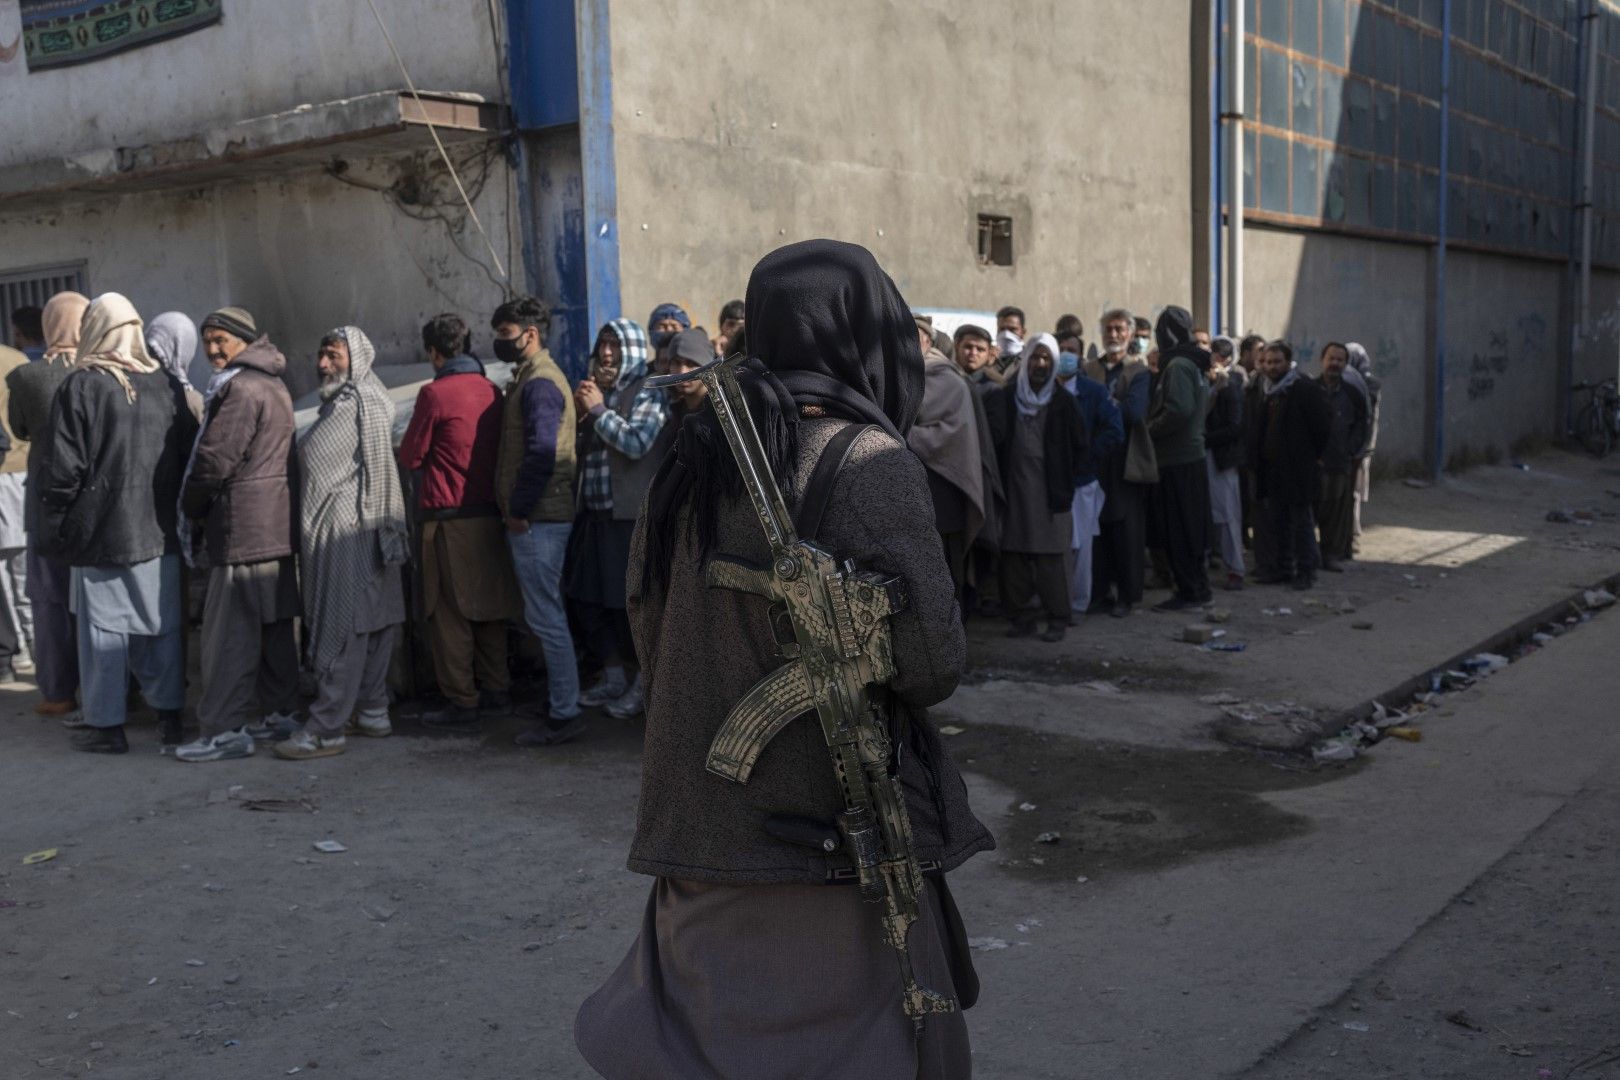 Ноември, 2021 г. - Талибан наблюдава опашка за пари в офис, организиран от Световната организация по прехраната в Кабул, Афганистан Талибан наблюдава опашка за пари в офис, организиран от Световната организация по прехраната в Кабул, Афганистан